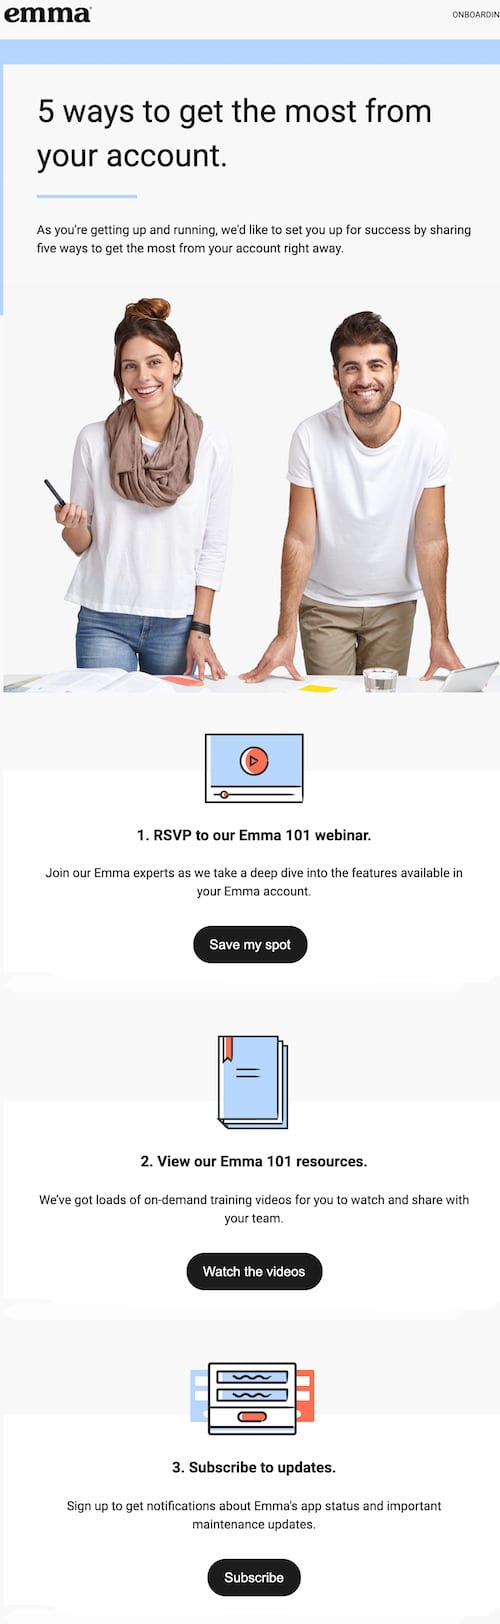 content-based-email-example: Este es un ejemplo del correo electrónico automatizado basado en el contenido de Emma.